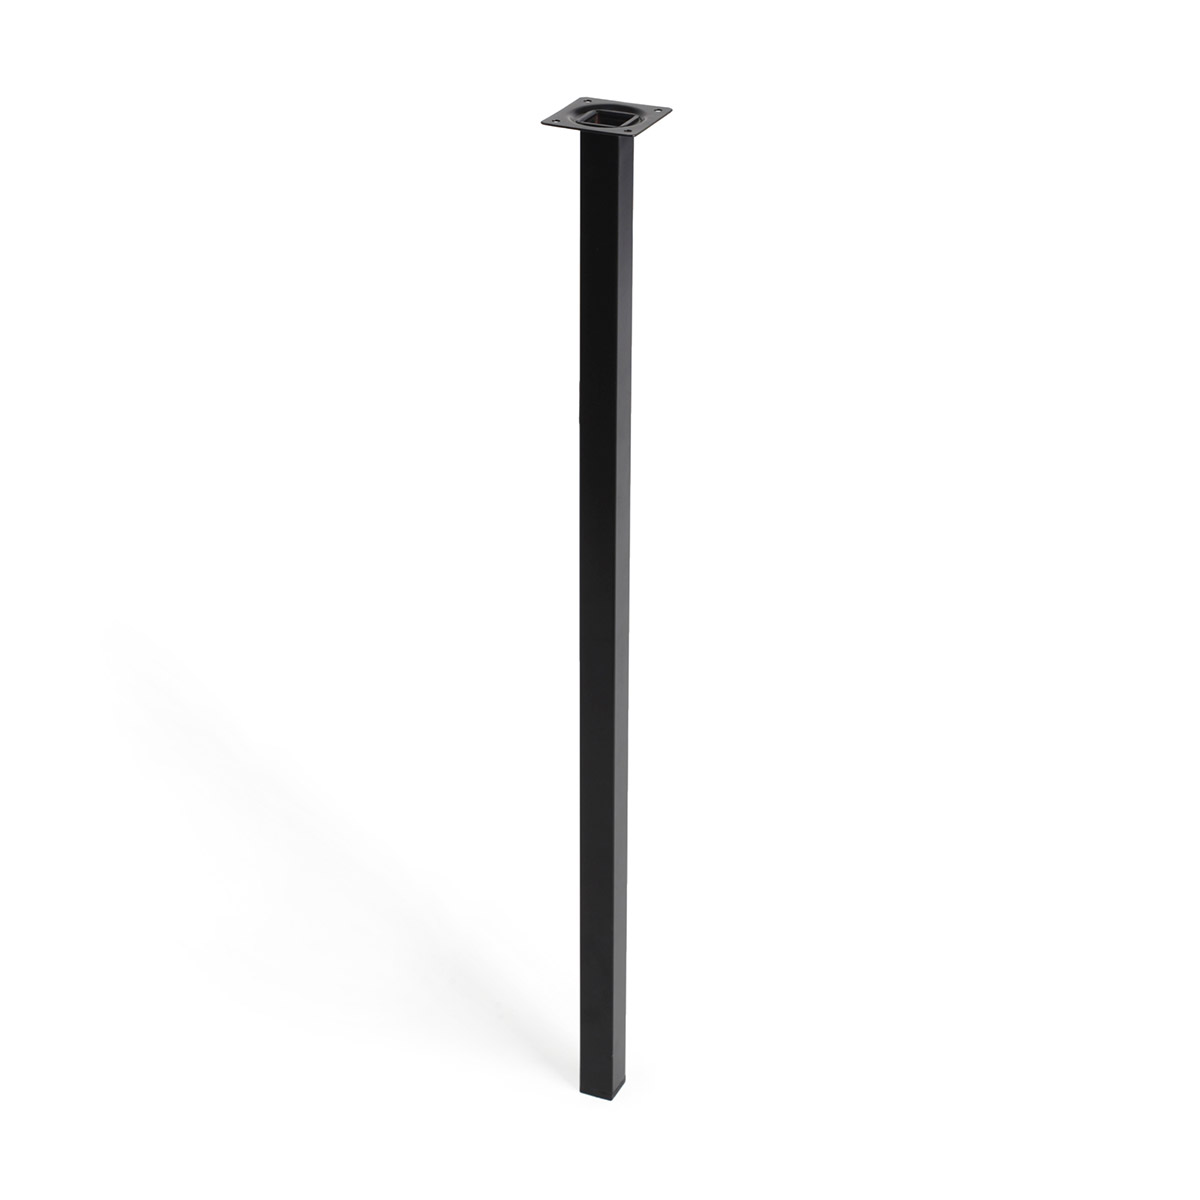 Juego de 4 patas regulables de acero cilíndricas con una altura de 700 mm y  acabadas en negro. Dimensiones: 60x60x710 mm